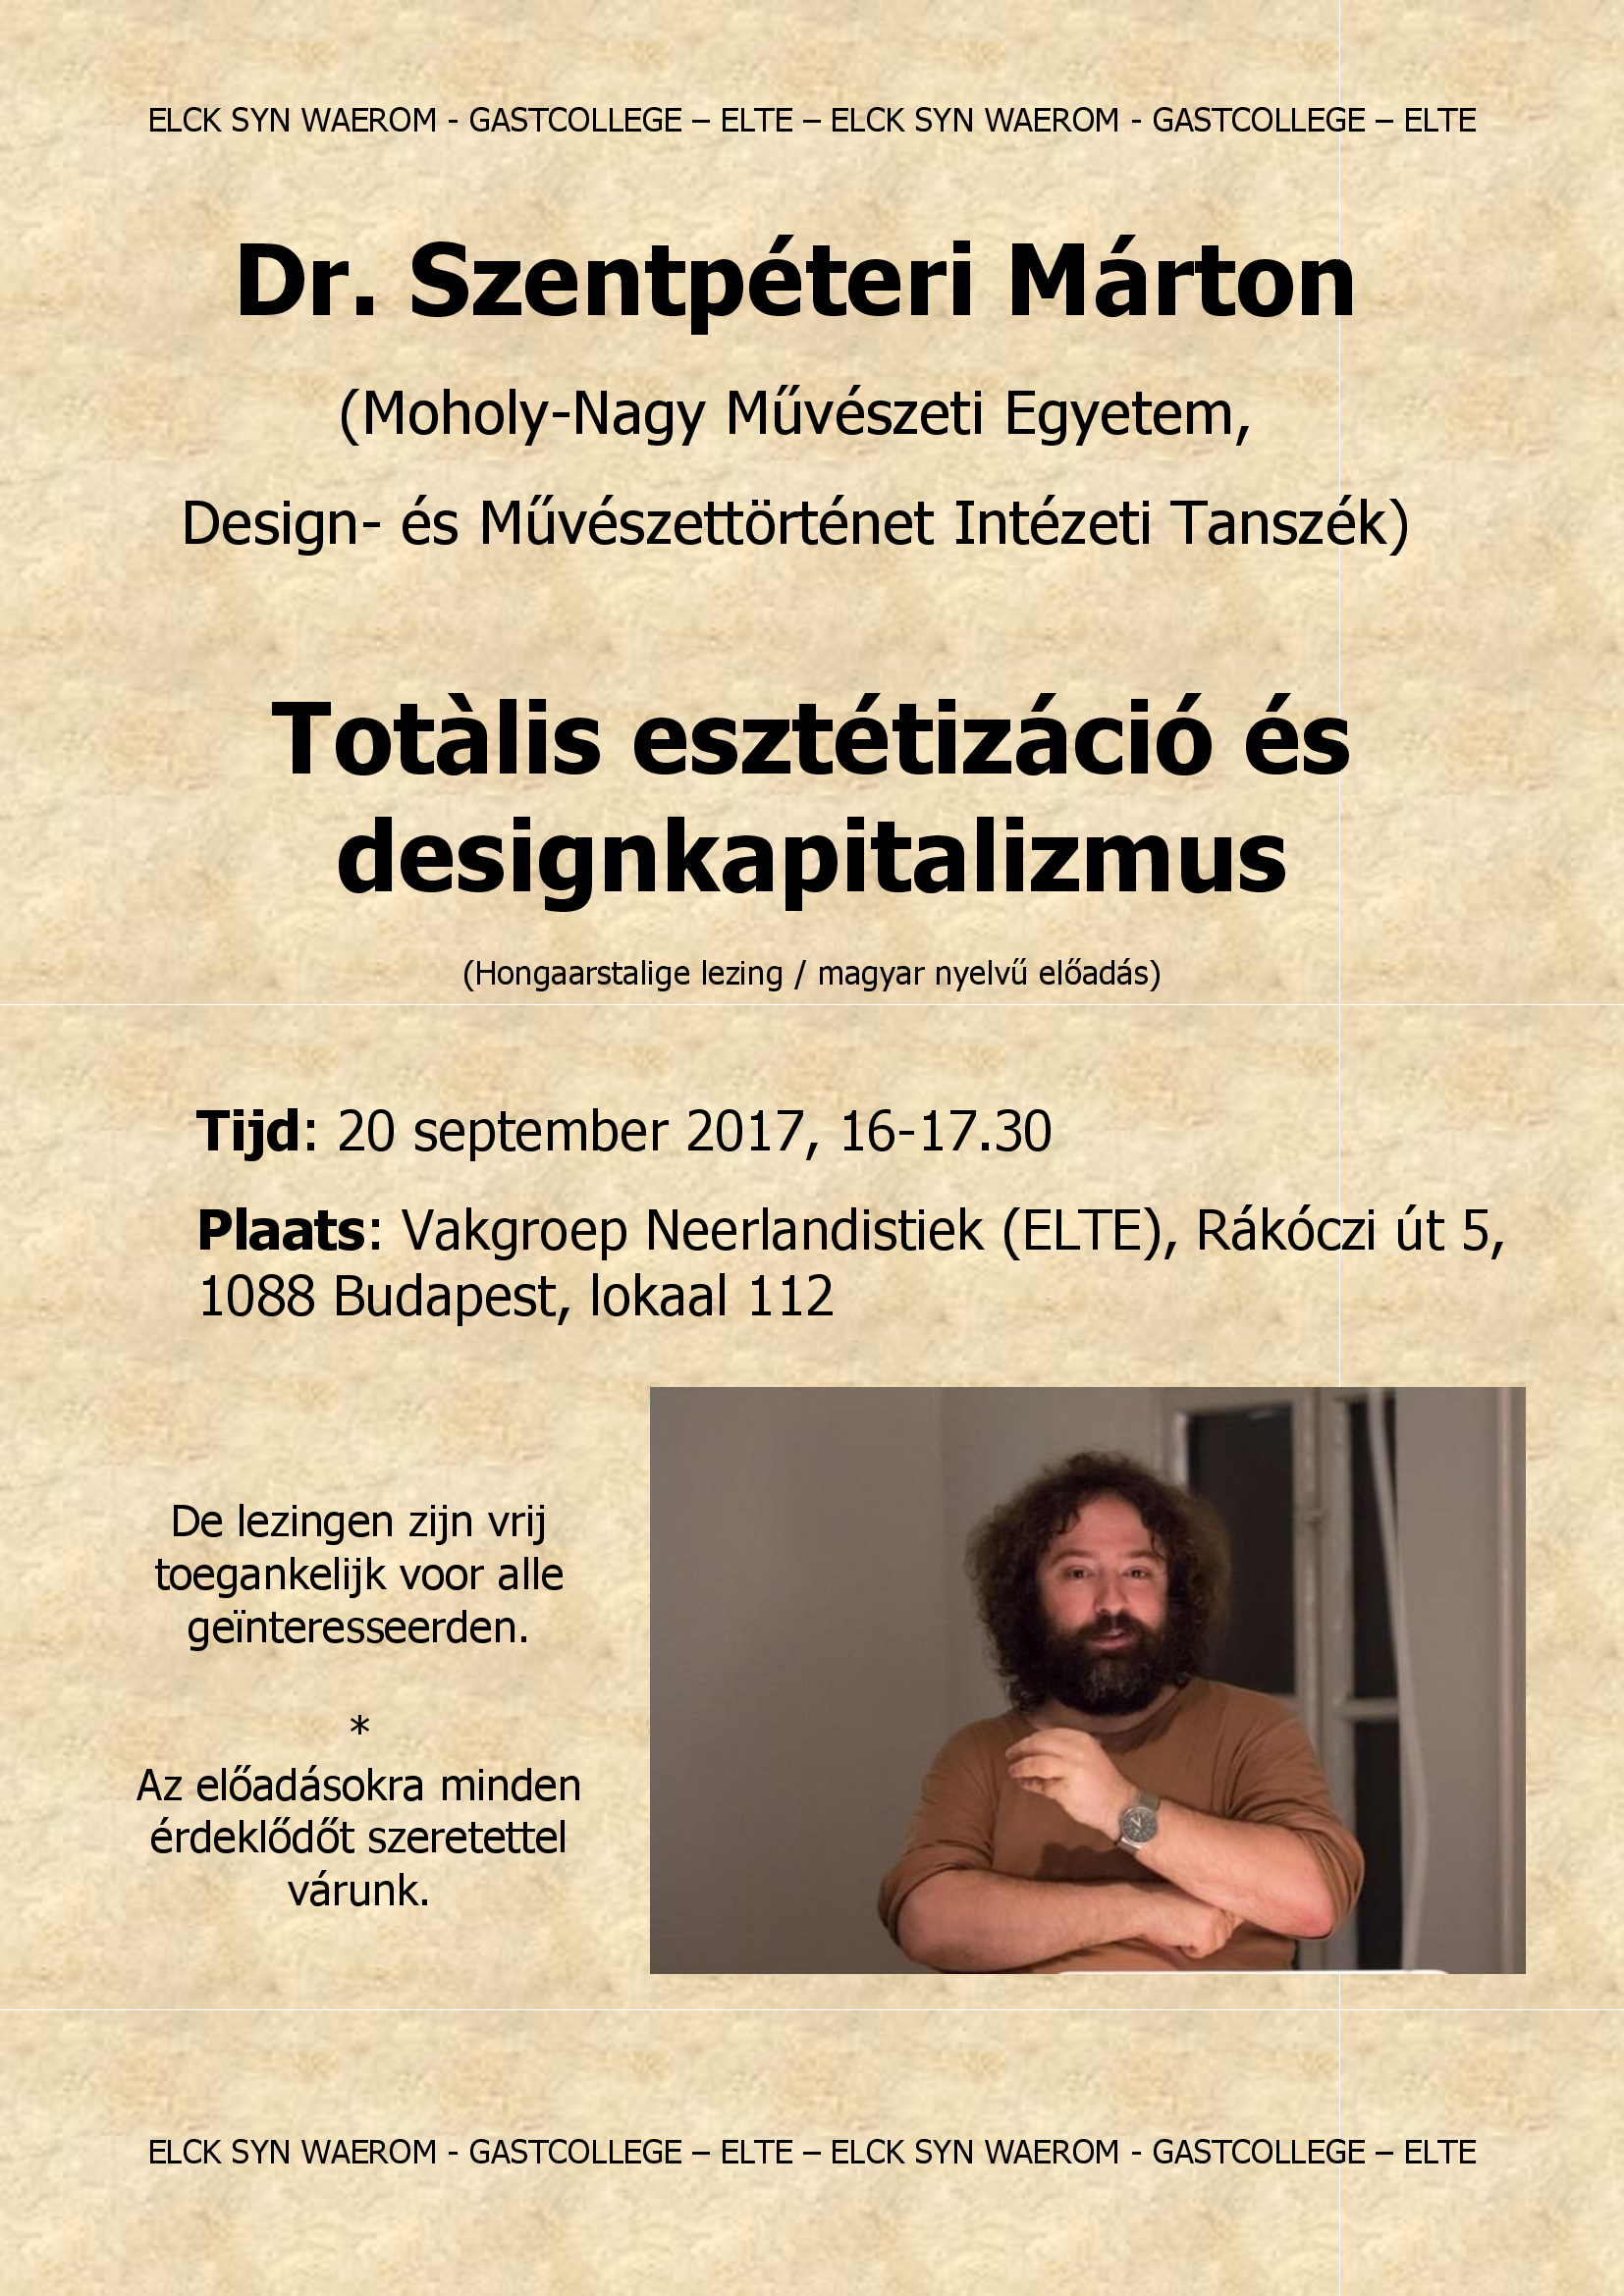 GASTCOLLEGE Szentpeteri affiche